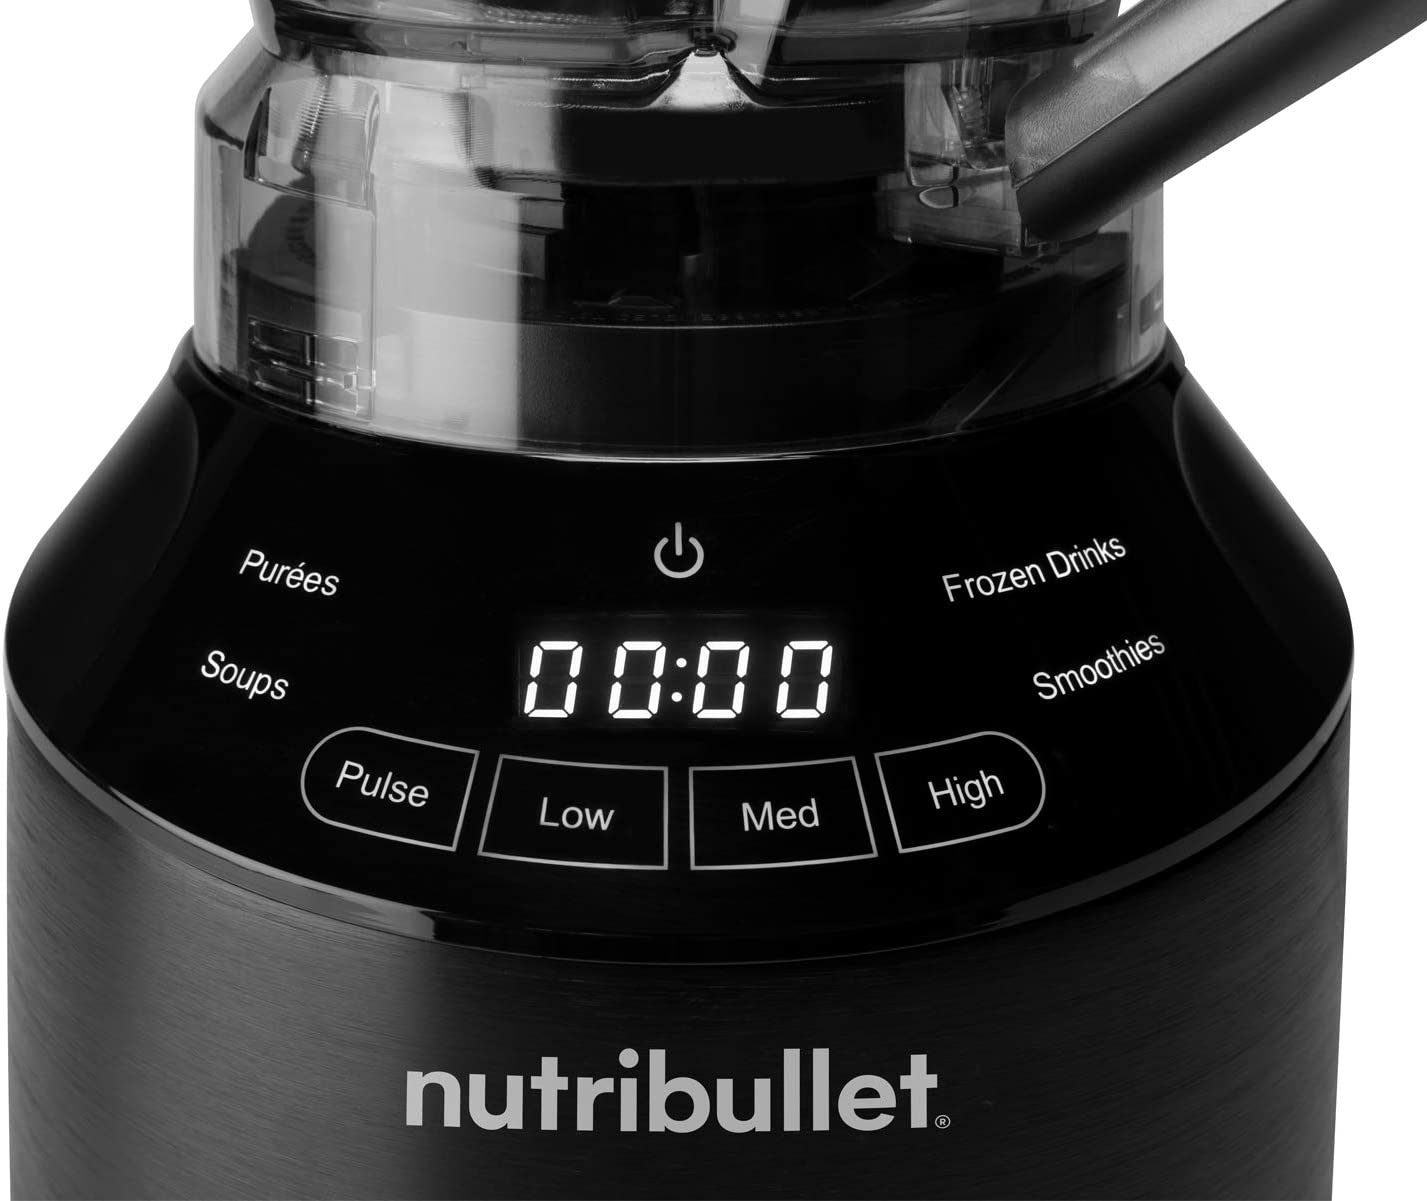 NutriBullet RNBF50520 1500W 64oz Smart Touch Blender Black - Certified Refurbished